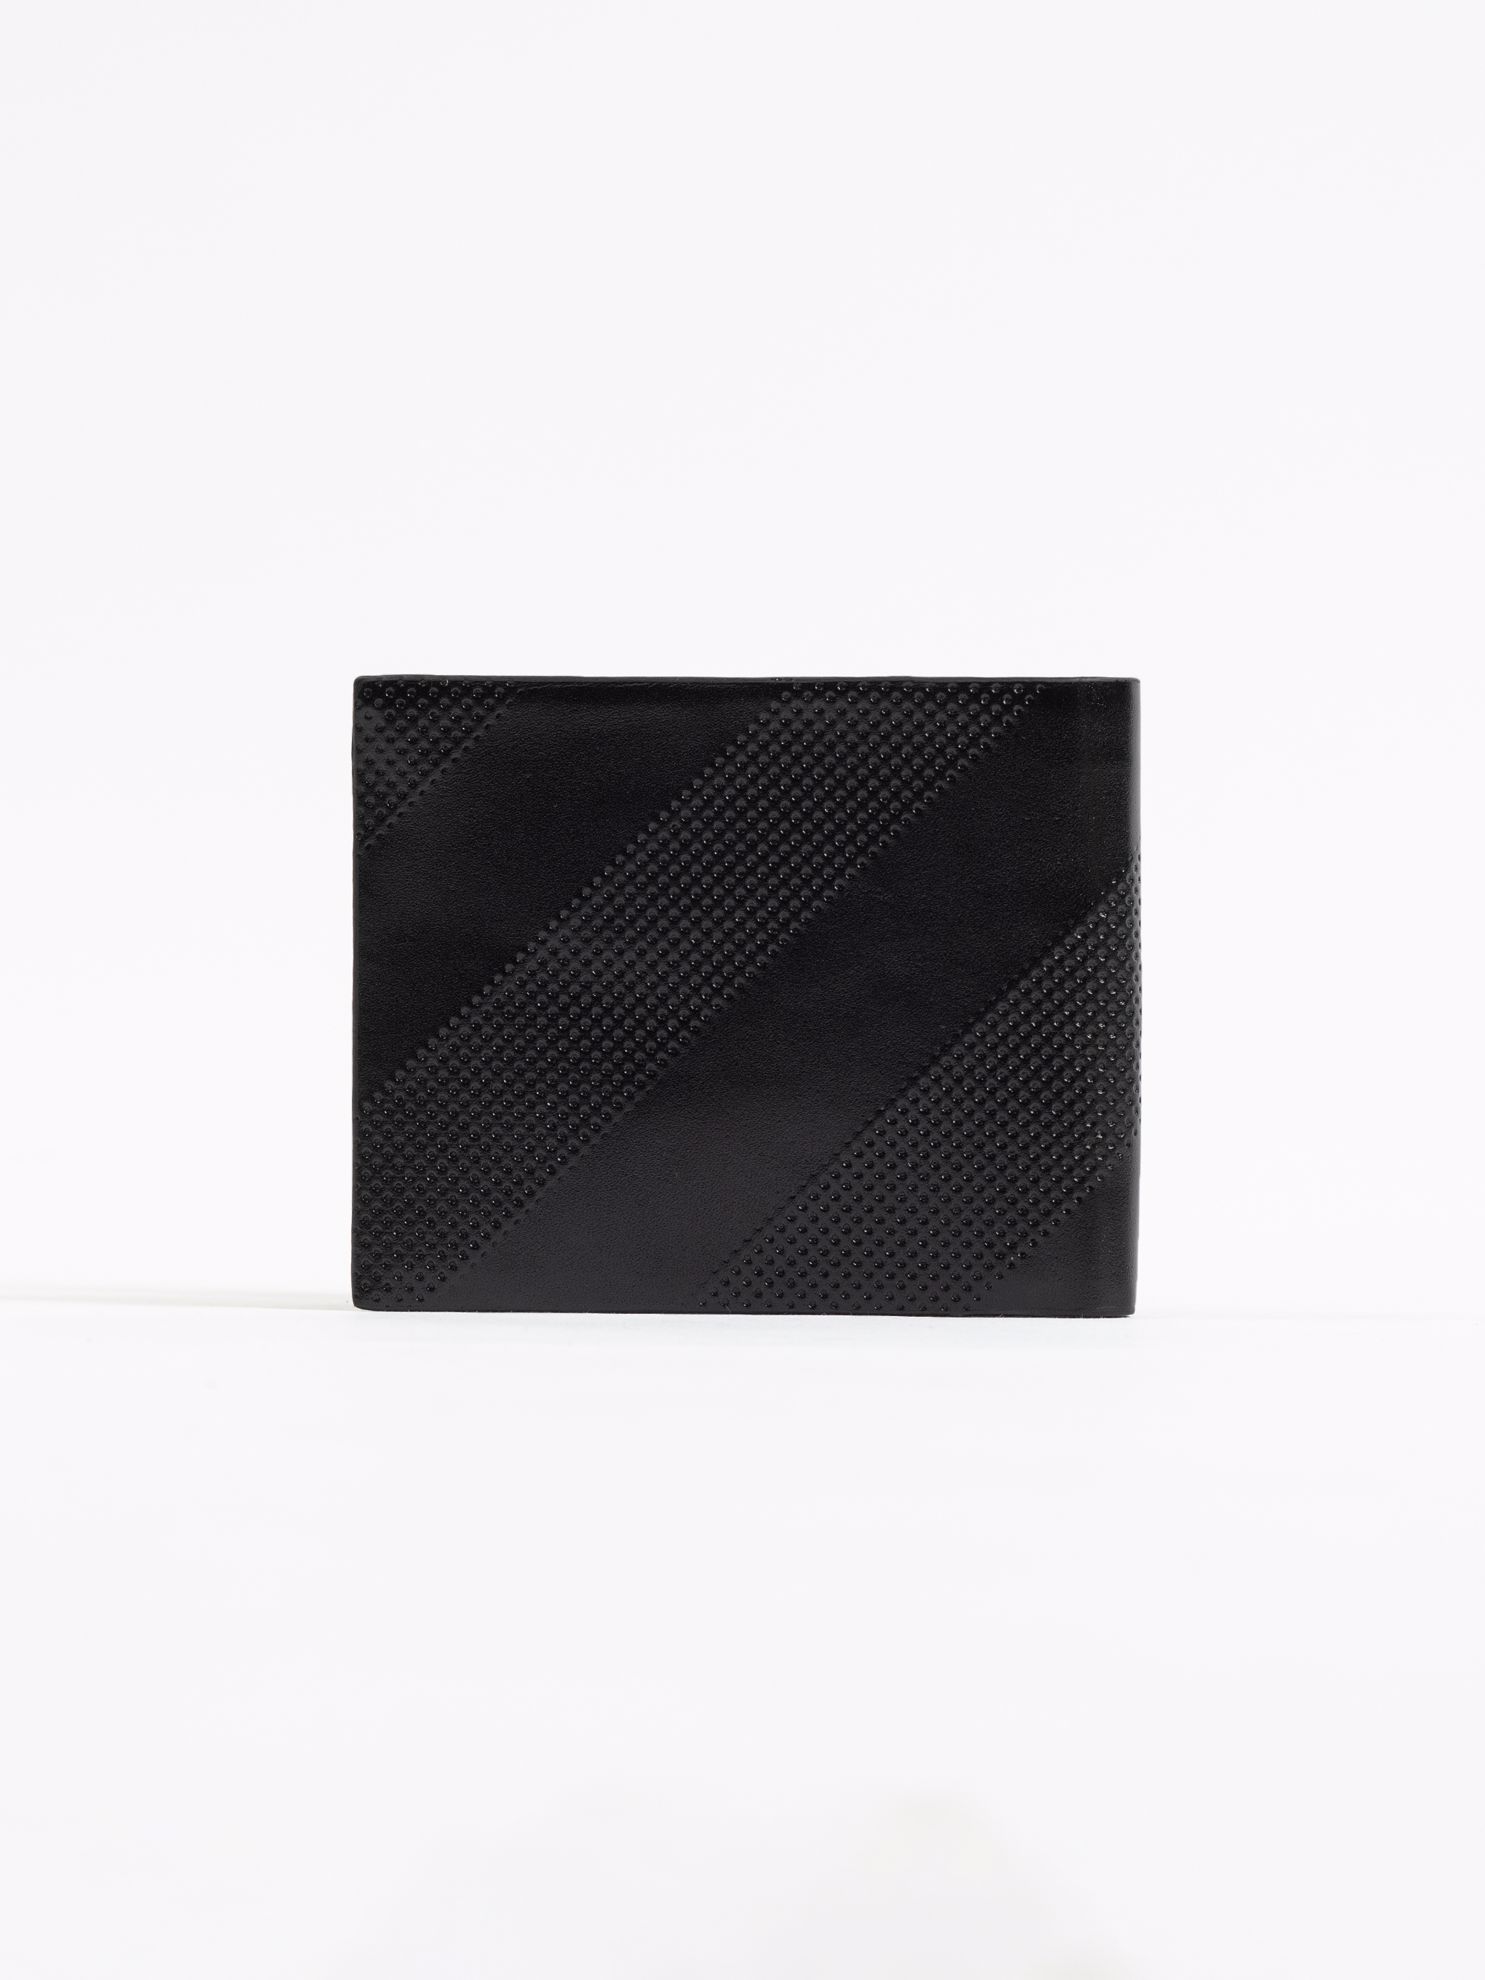 Karaca Erkek Cüzdan-Siyah. ürün görseli